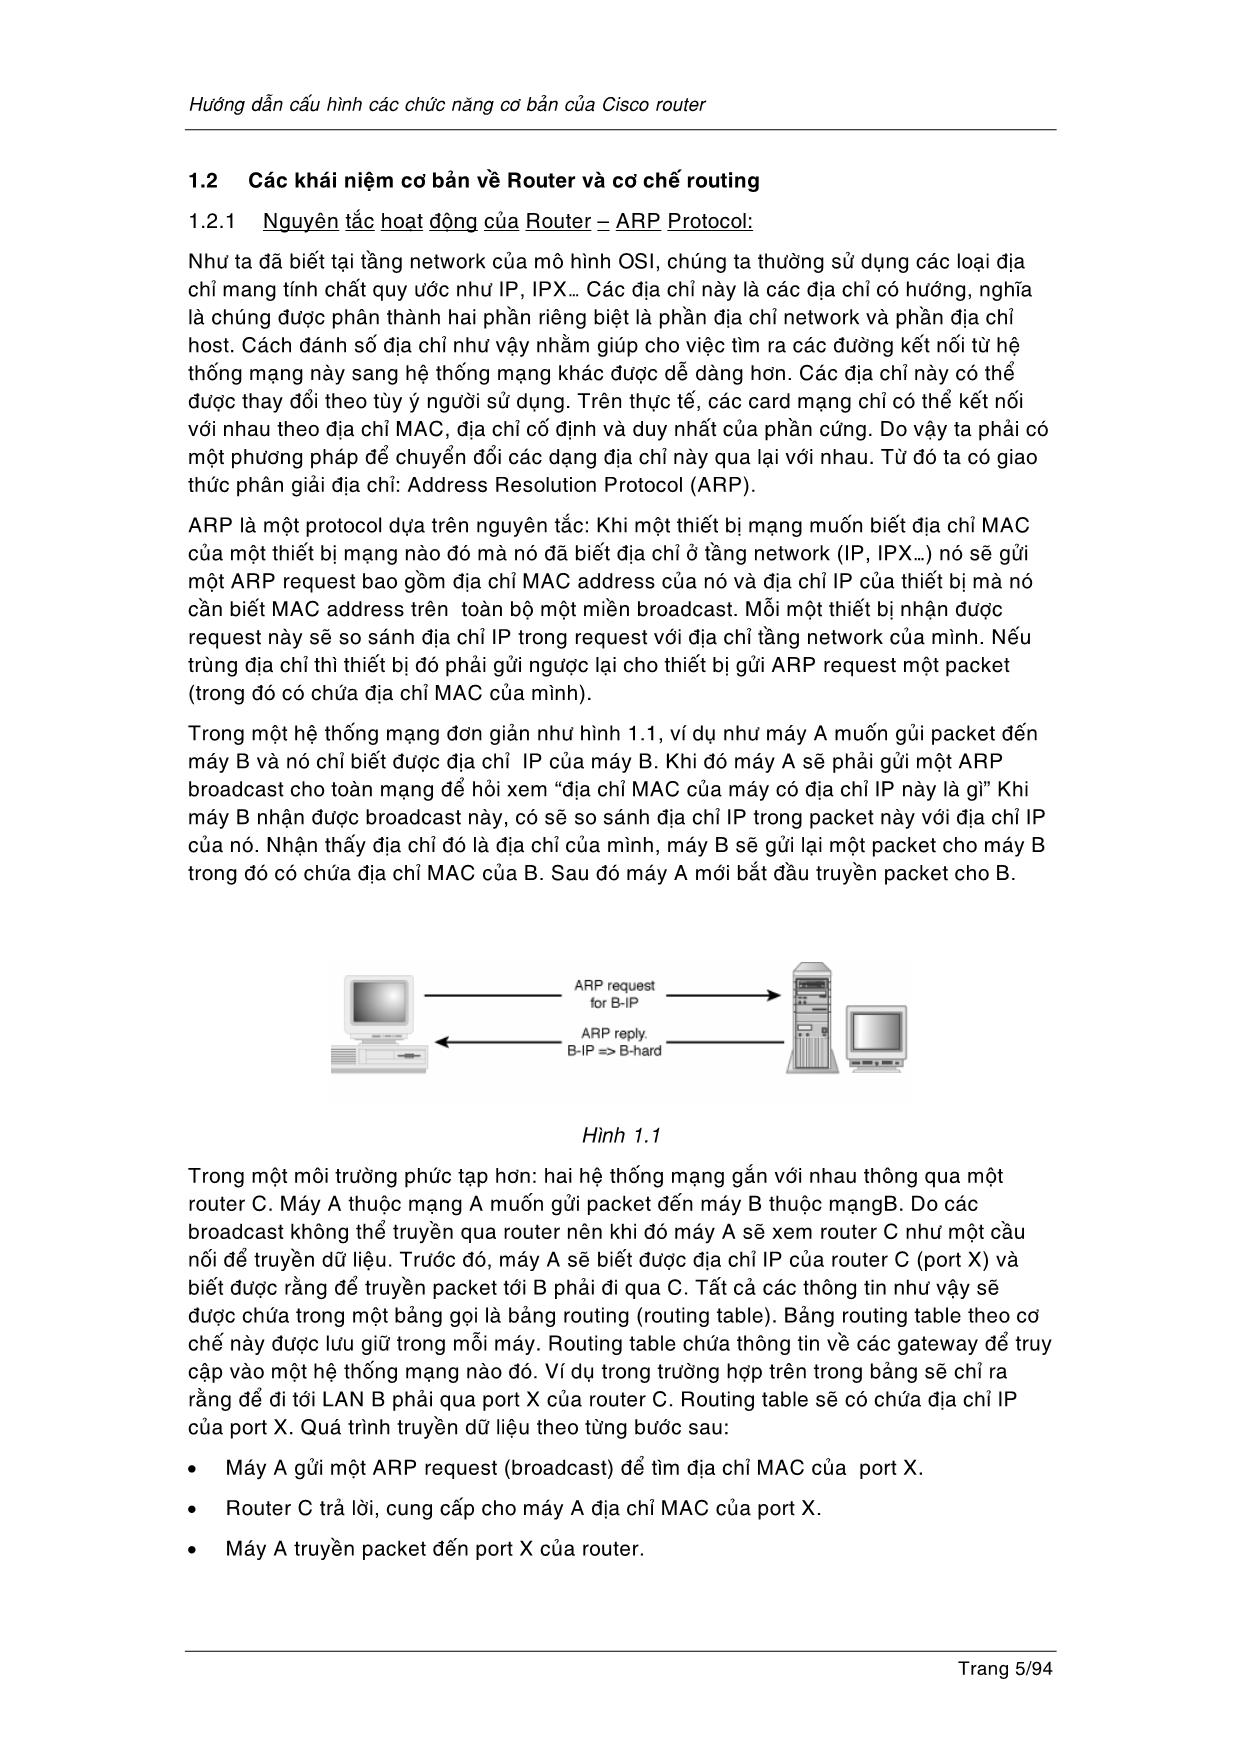 Hướng dẫn cấu hình các chức năng cơ bản của Cisco Router trang 5